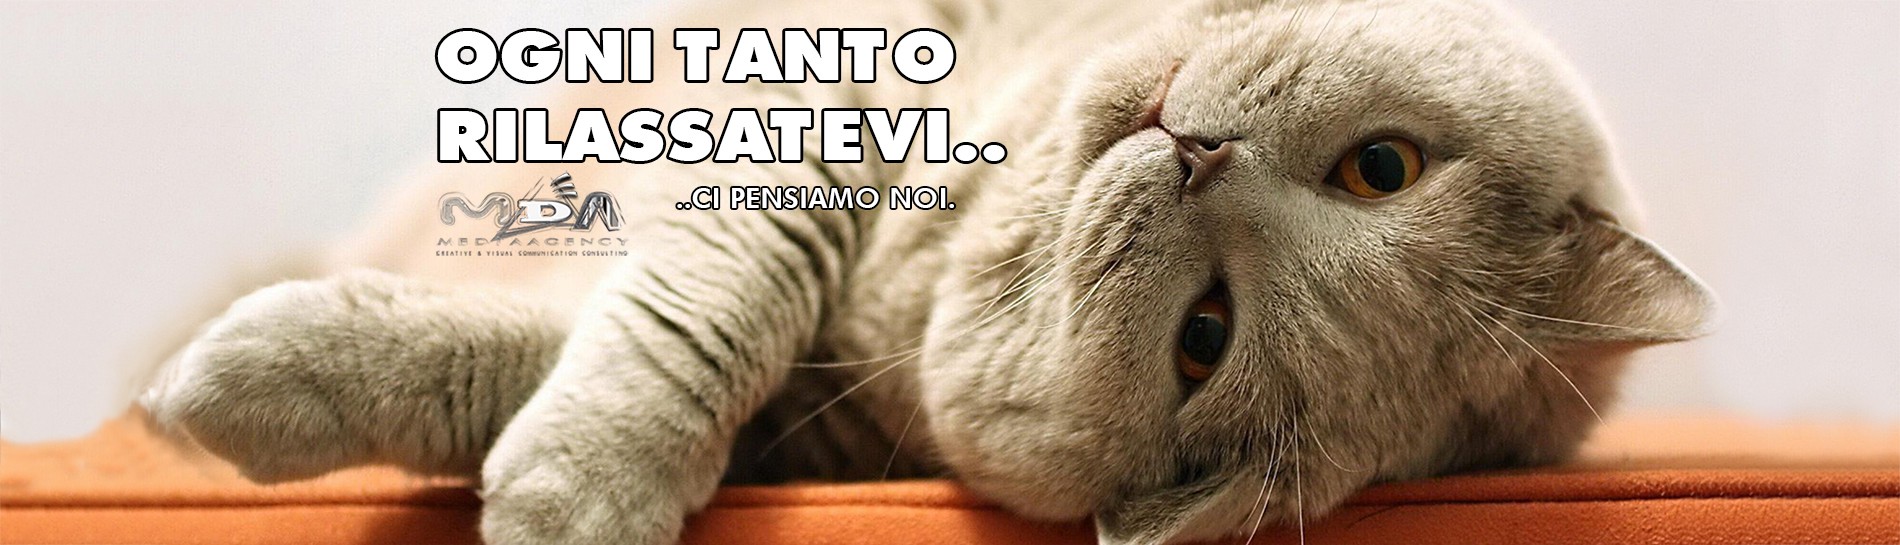 gatto_01-12-14